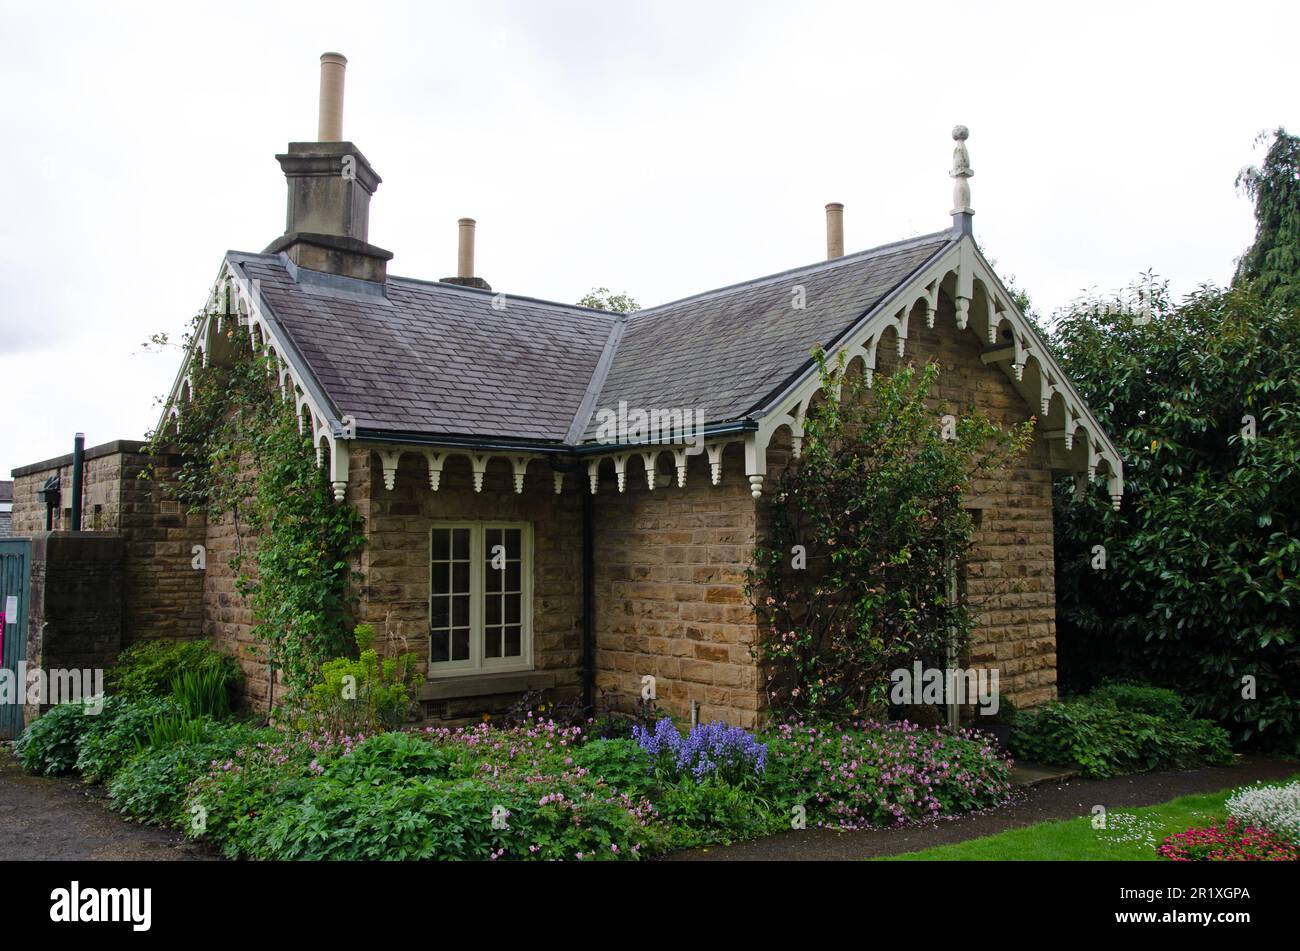 Kleines Steinhaus mit kunstvoller Dachverkleidung. Formteile und Finale im viktorianischen Stil auf den Barkassen. Sheffield Botanical Gardens Stockfoto